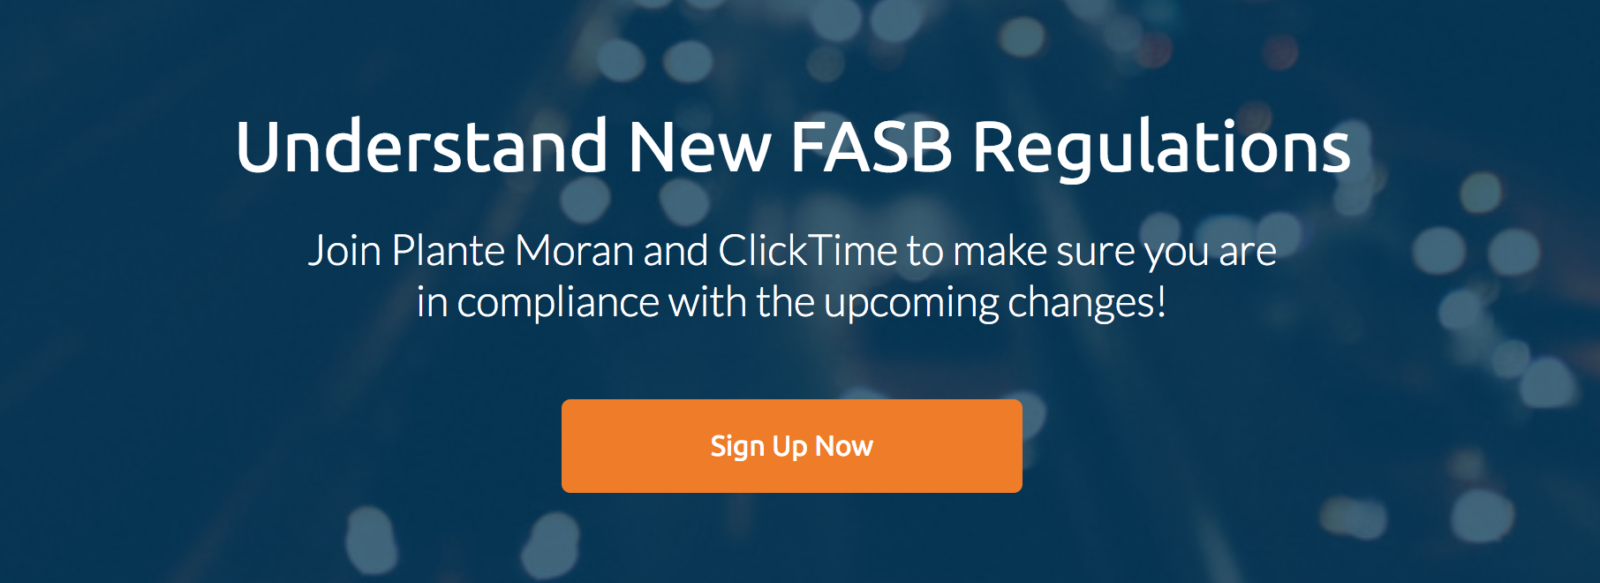 FASB regulations webinar